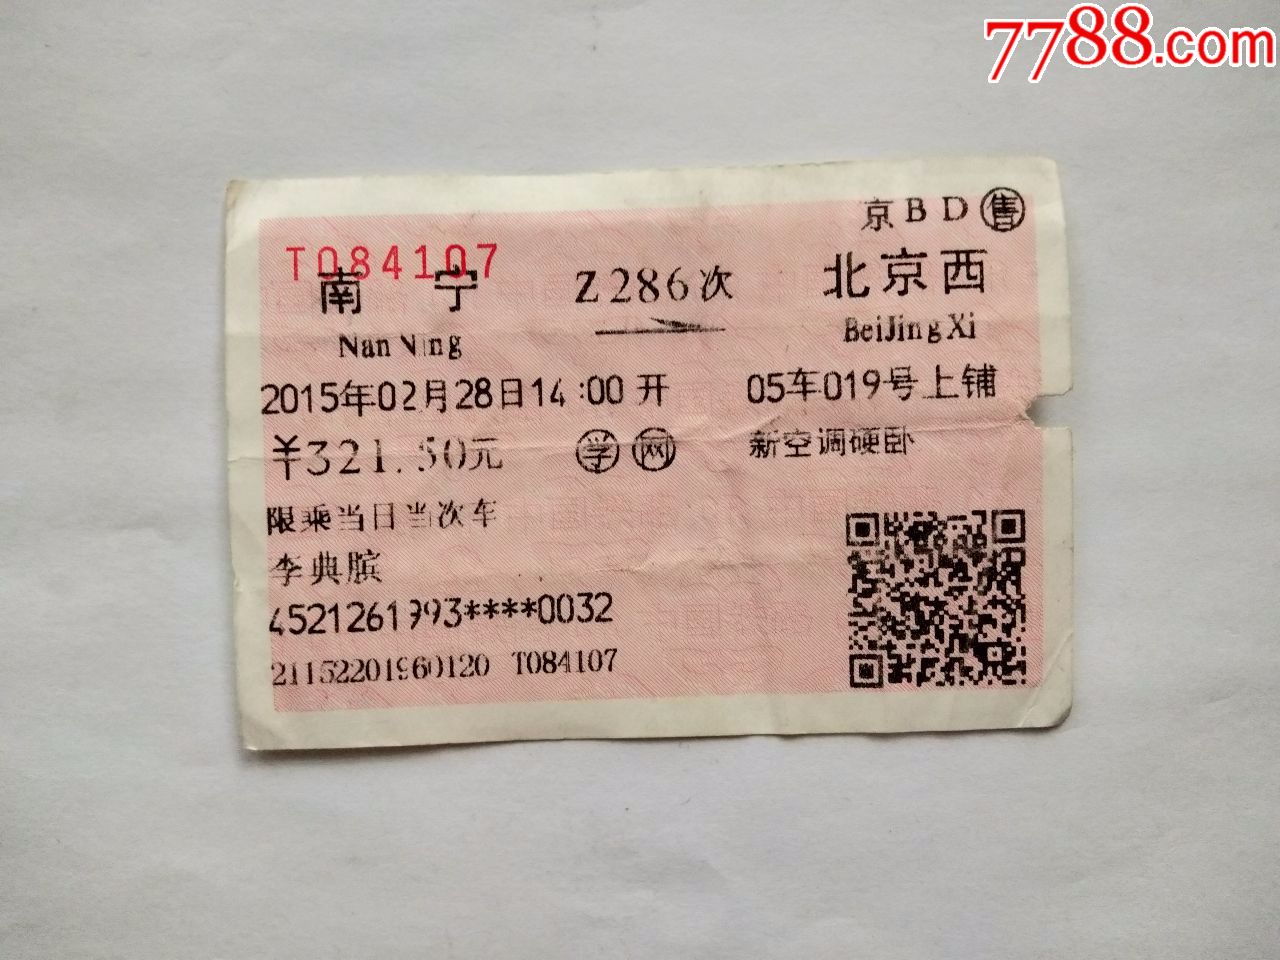 南宁-Z286次-北京西